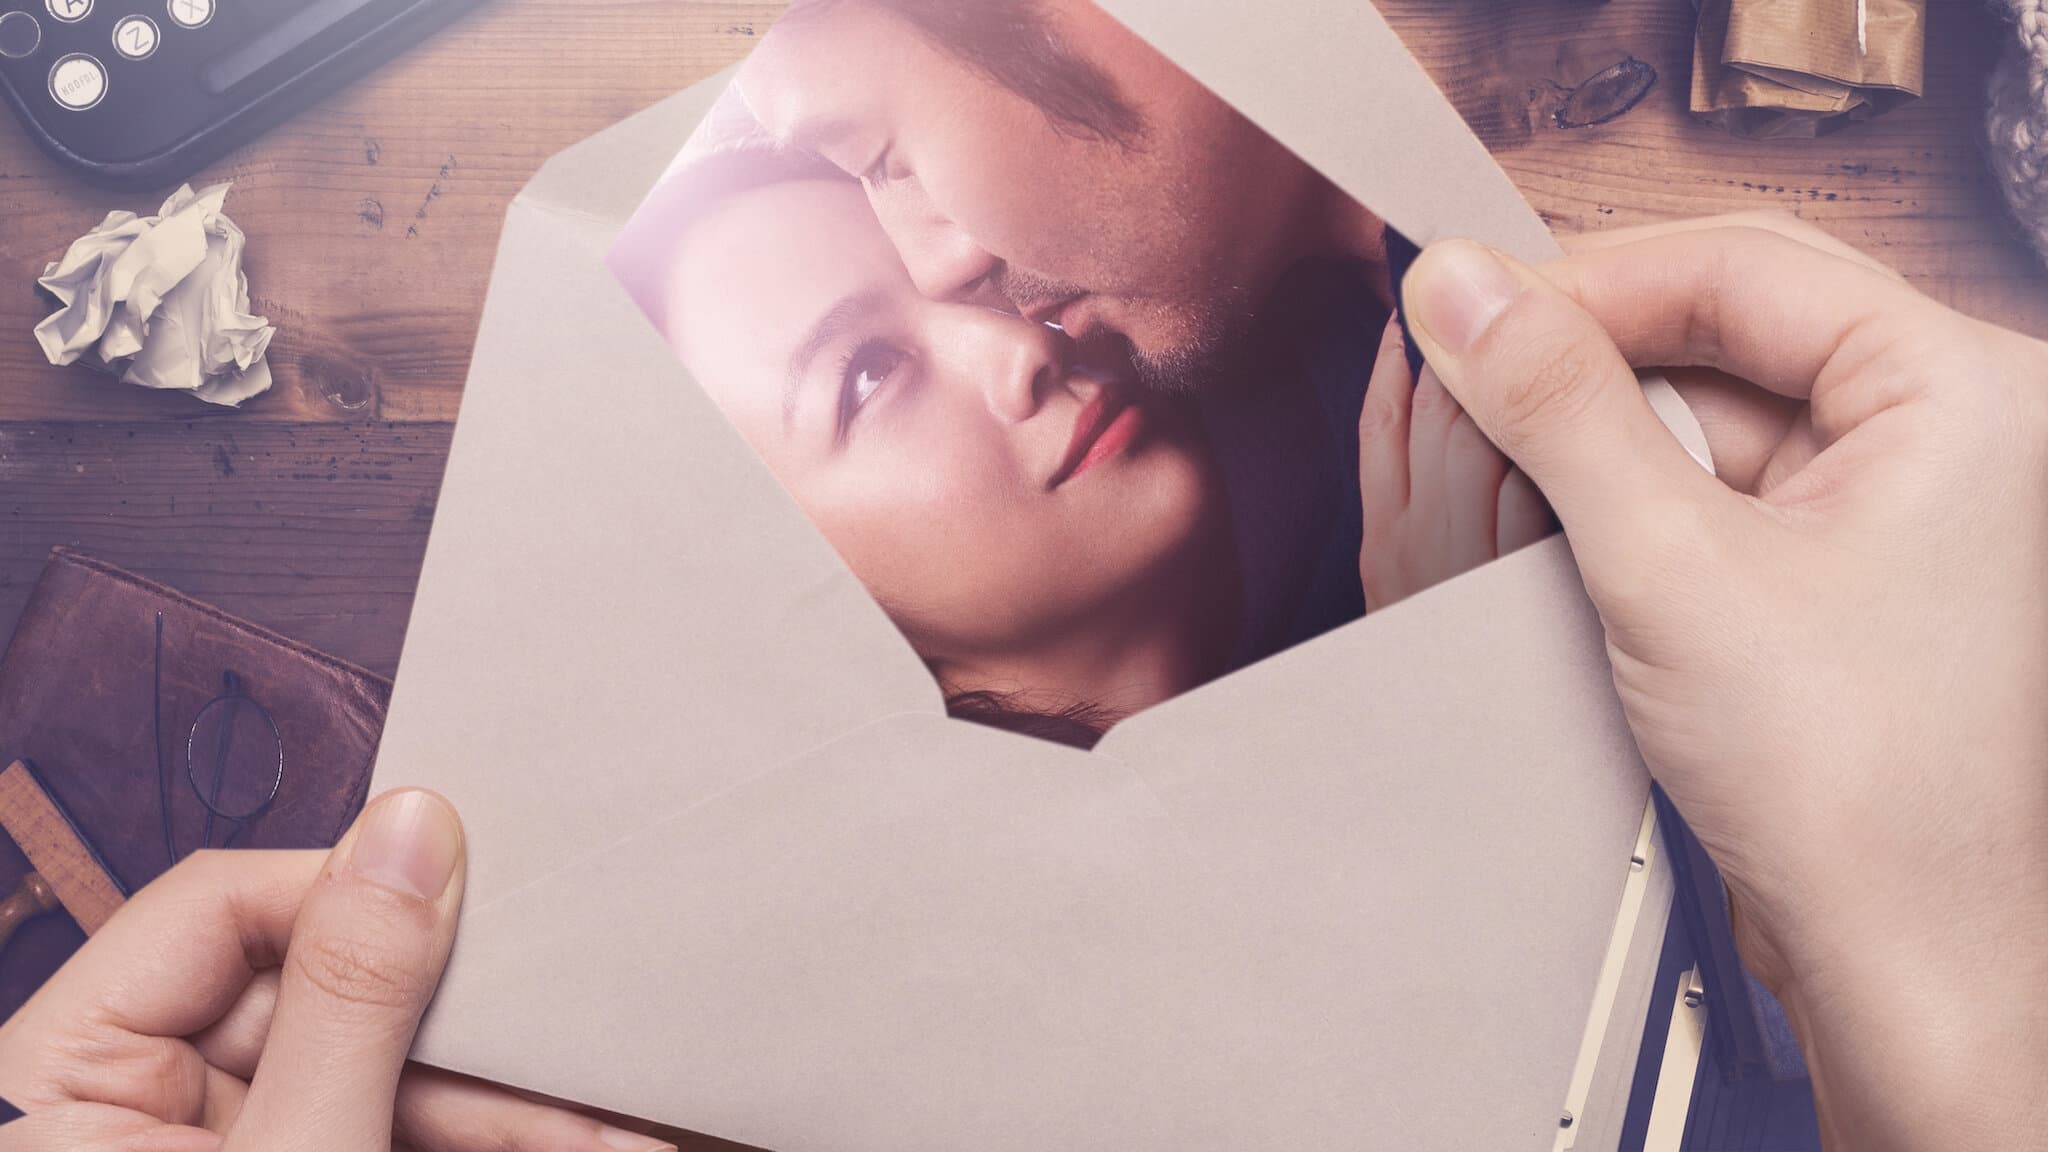 Poster Phim Truy tìm người hoàn hảo 2: Cuốn sách tình yêu (Finding Mr. Right 2: Book of Love)